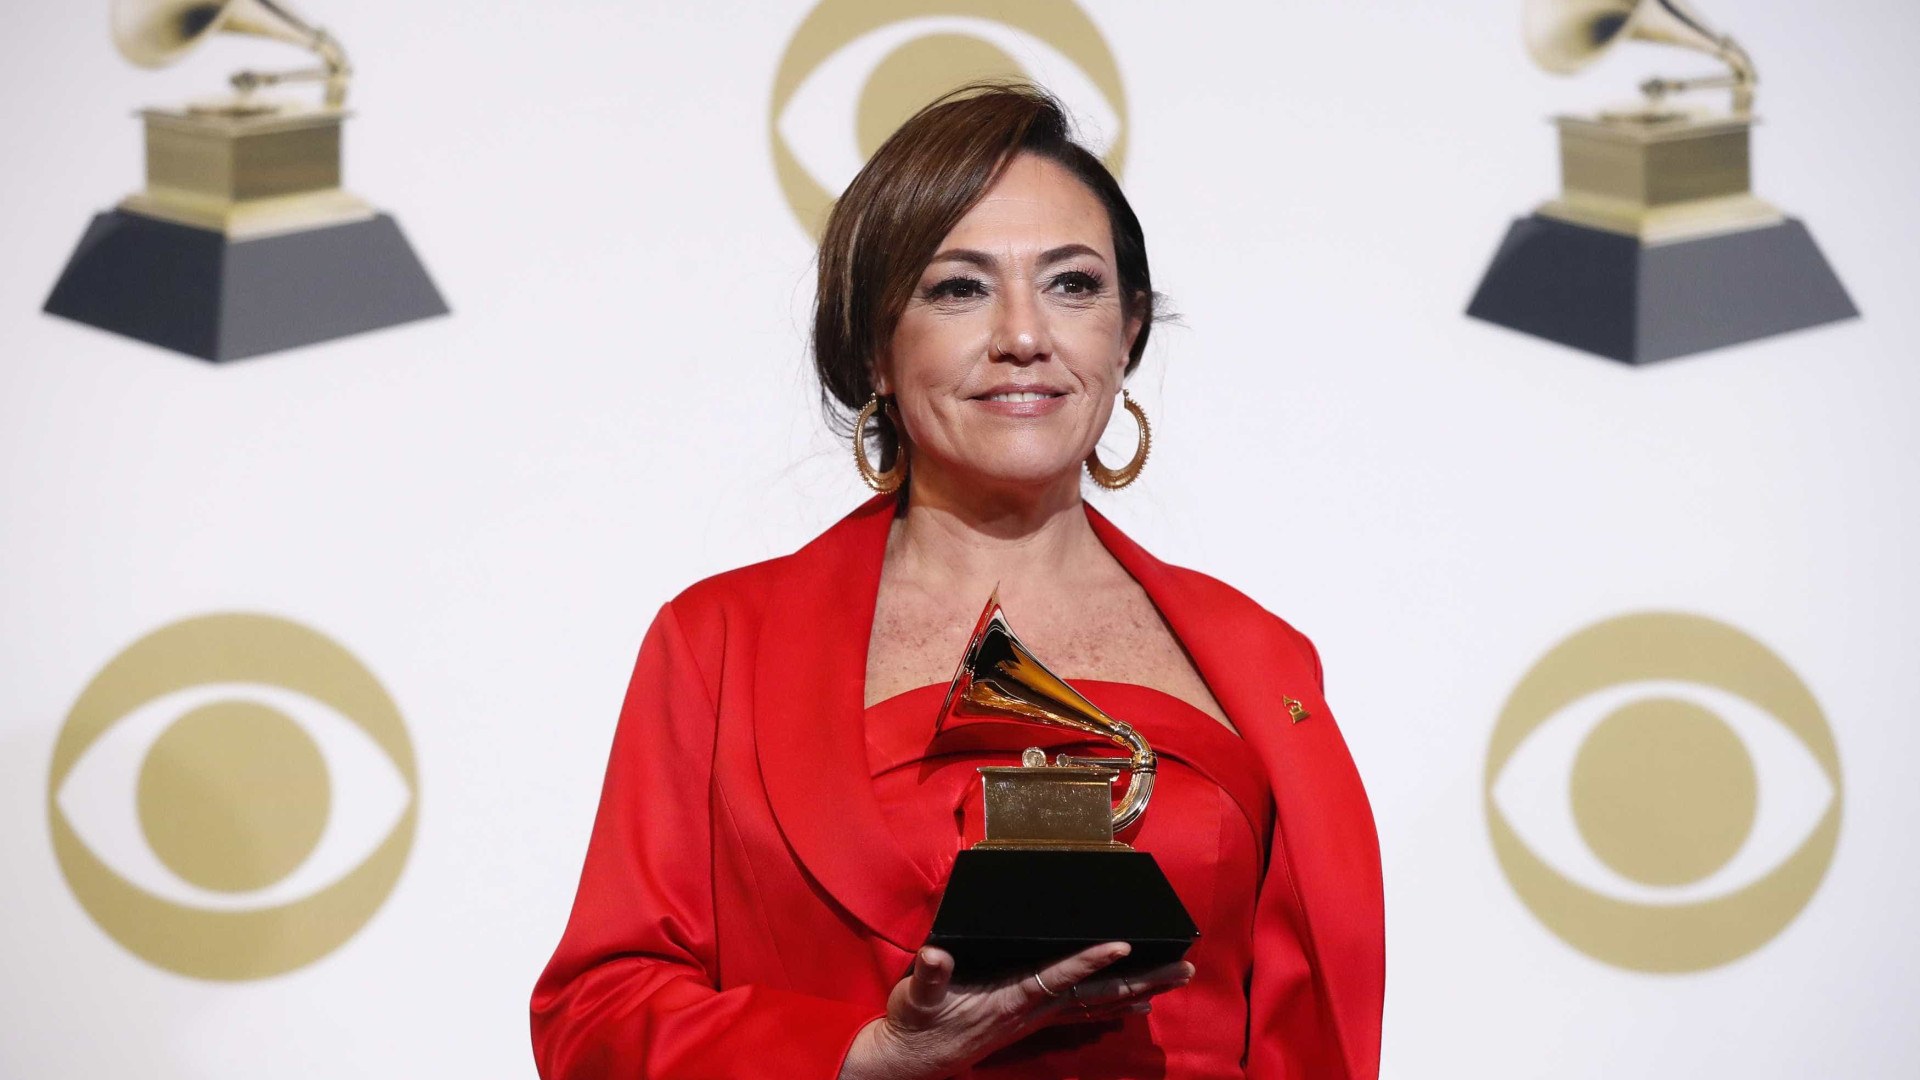 Vencedora do Grammy teve canções suas gravadas por diversos artistas